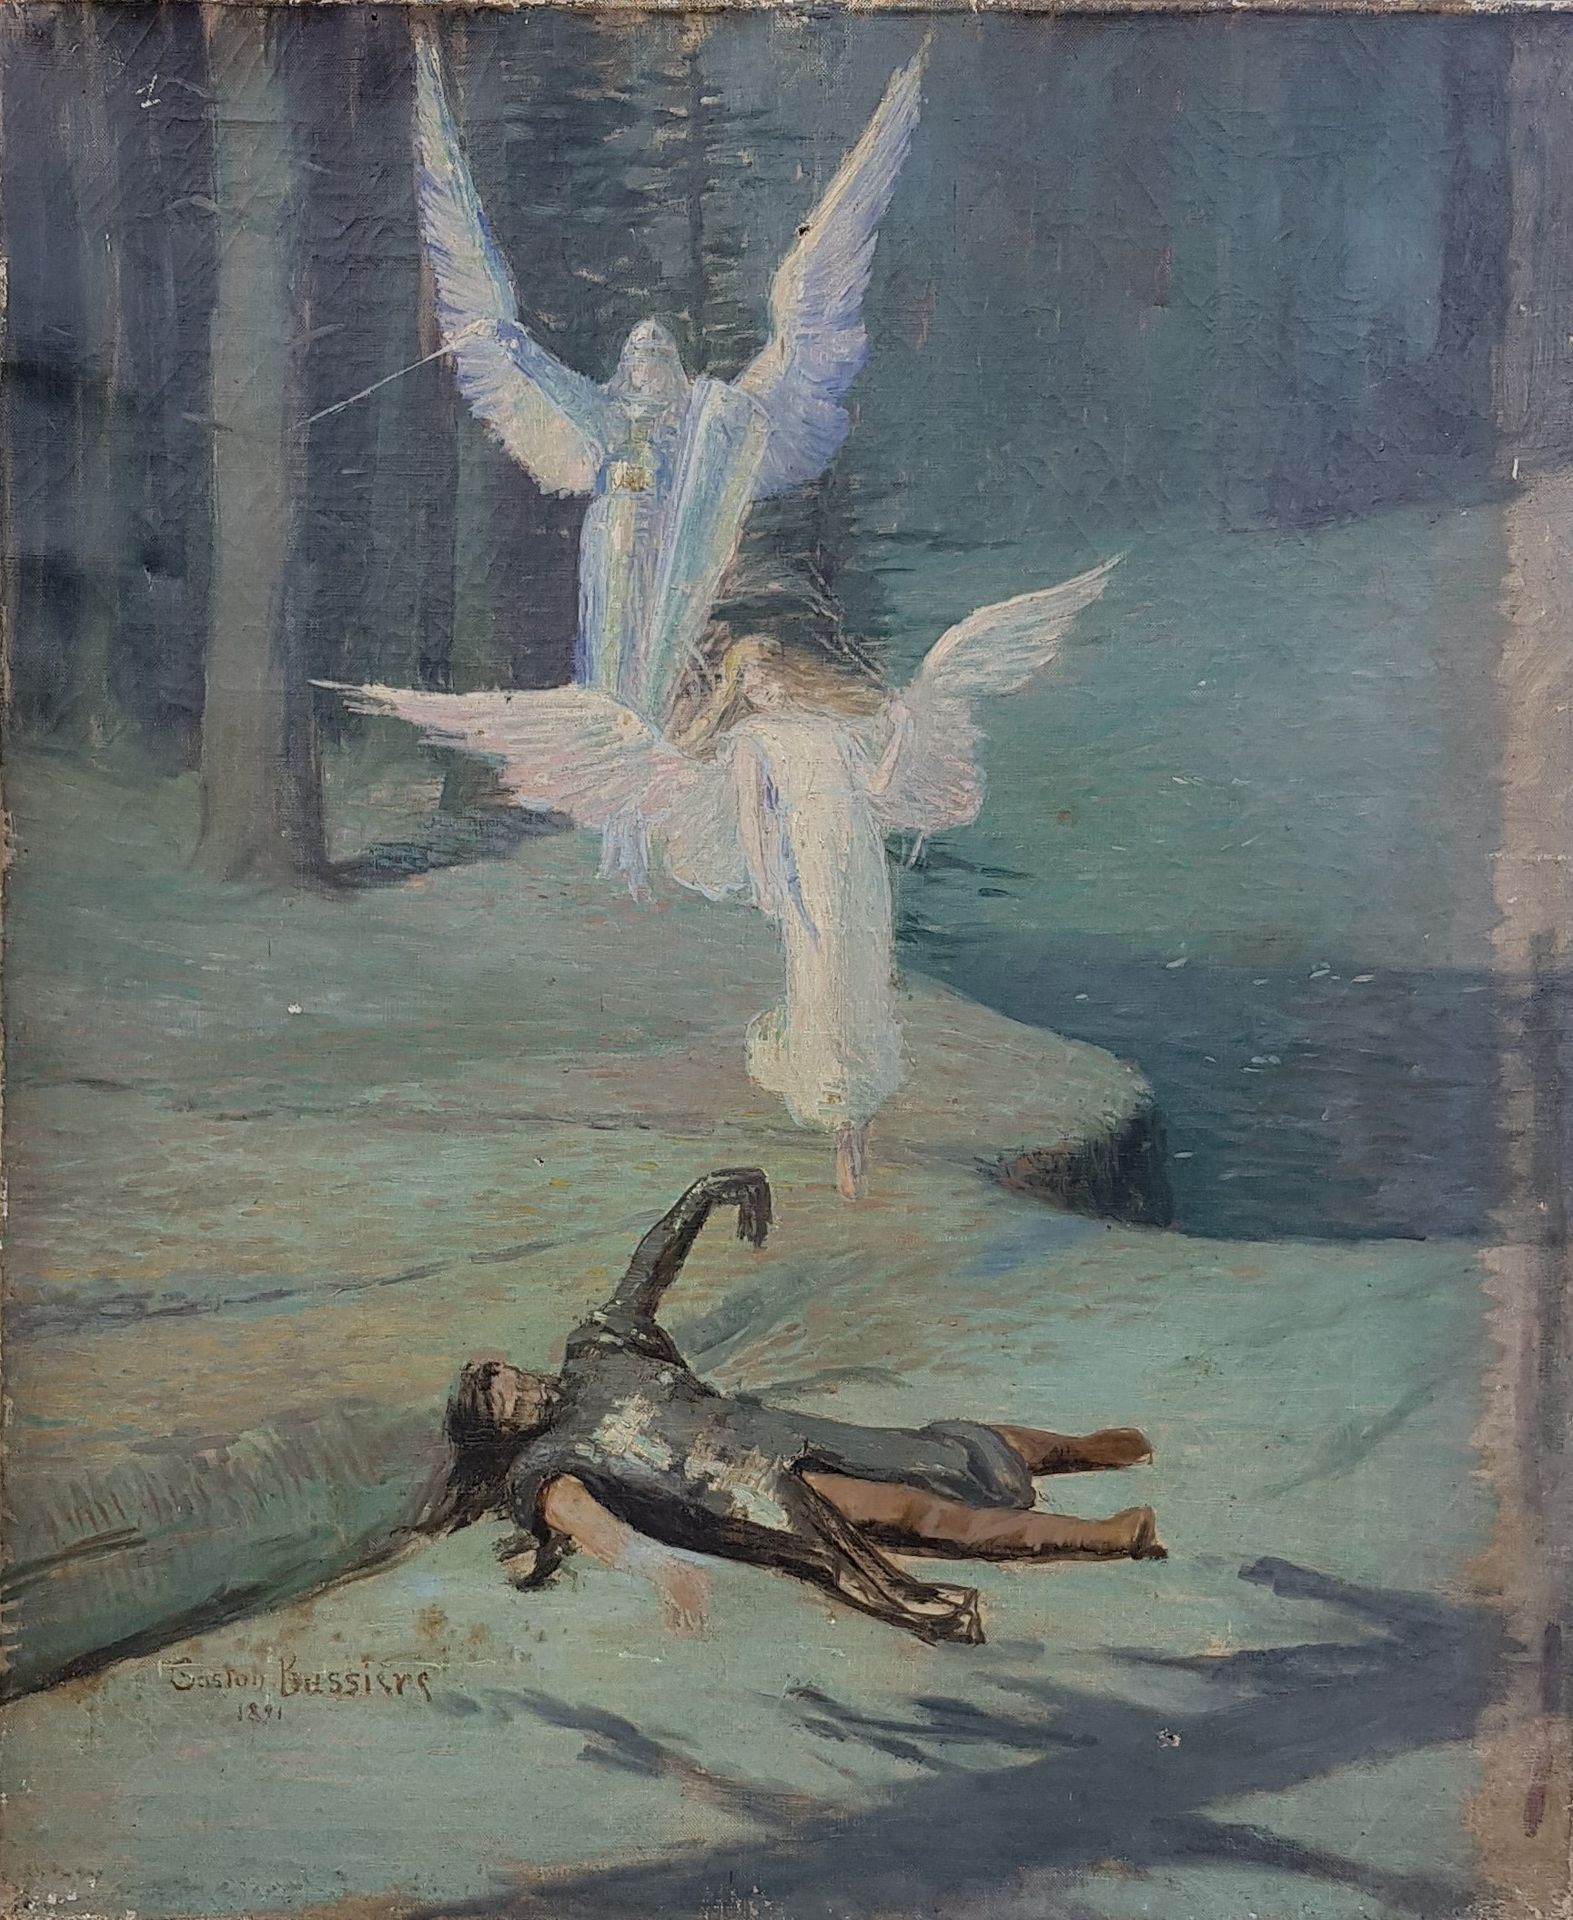 BUSSIÈRE Gaston (1868-1928) "Öl auf Leinwand, signiert und datiert 1891, 65 x 54&hellip;